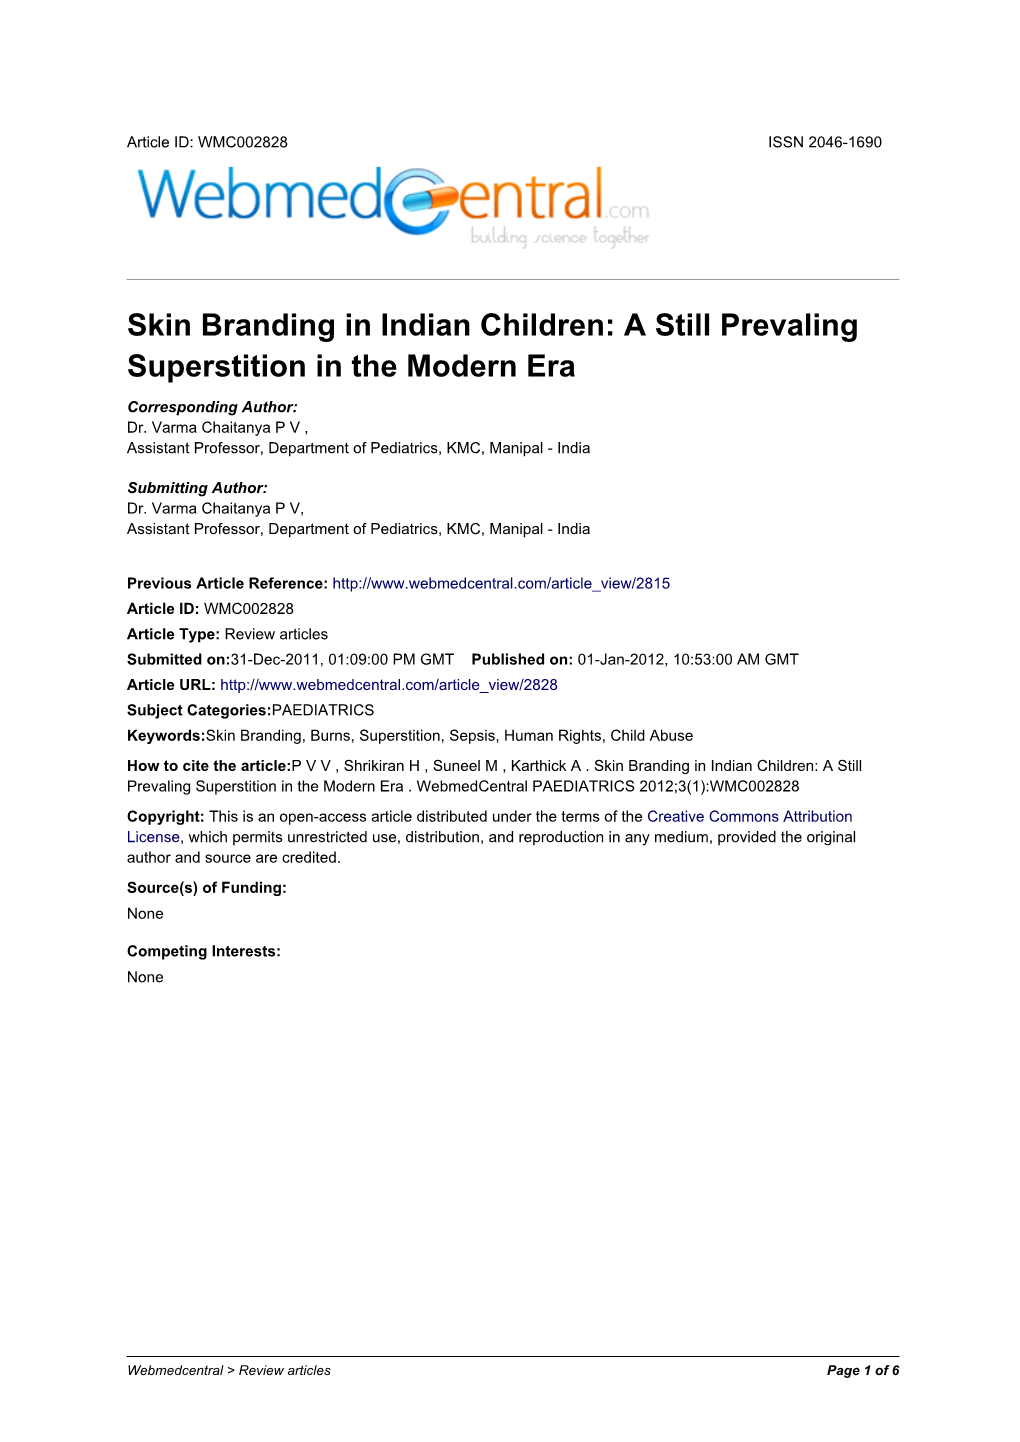 Skin Branding in Indian Children: a Still Prevaling Superstition in the Modern Era